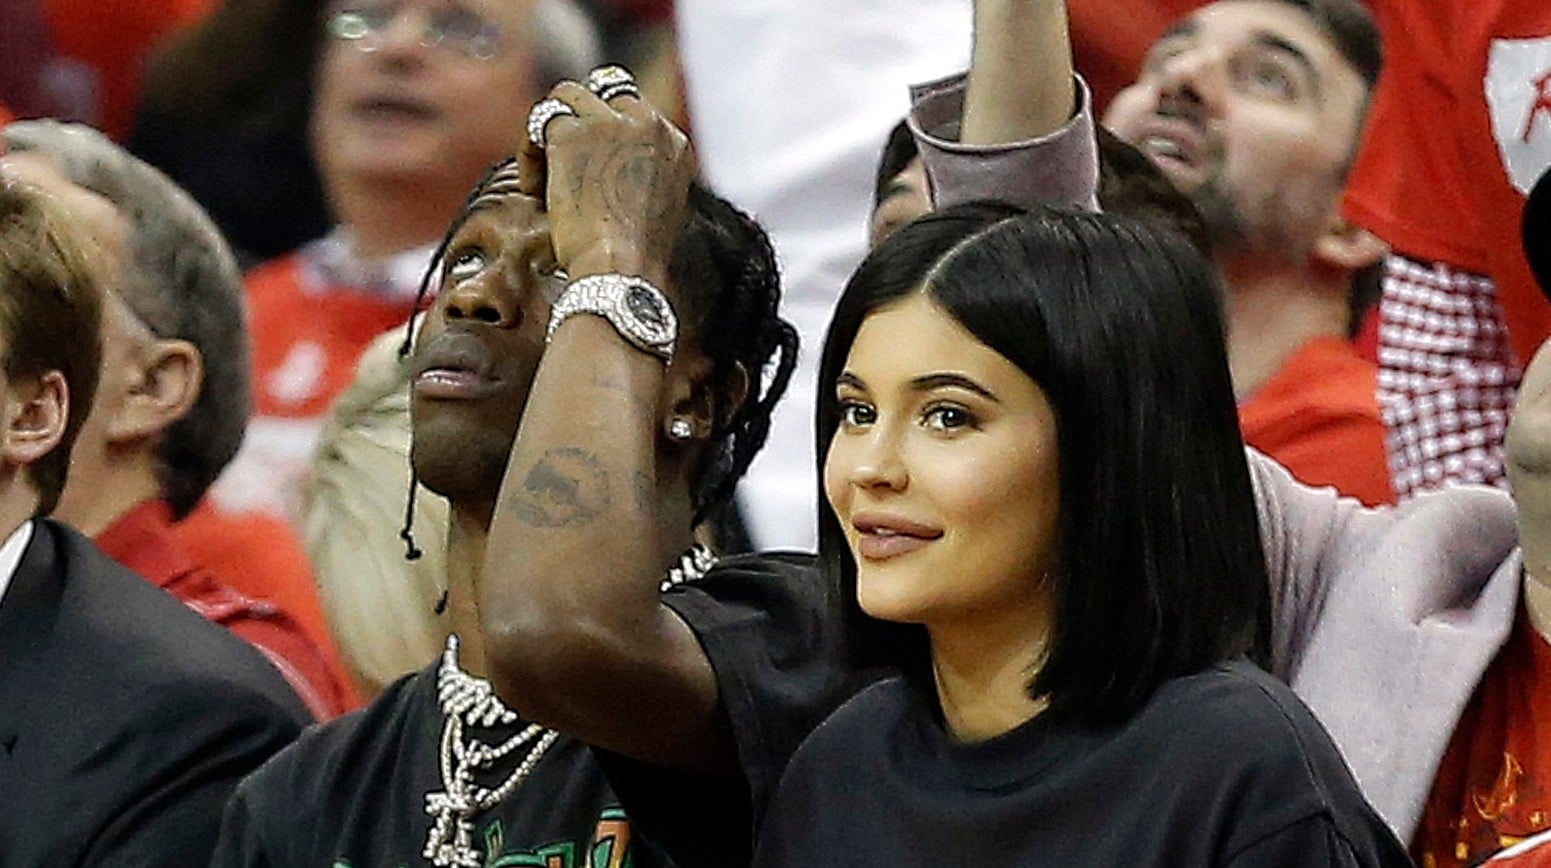 Kylie Jenner and Travis Scott at Basketball Game April 2018 | POPSUGAR ...